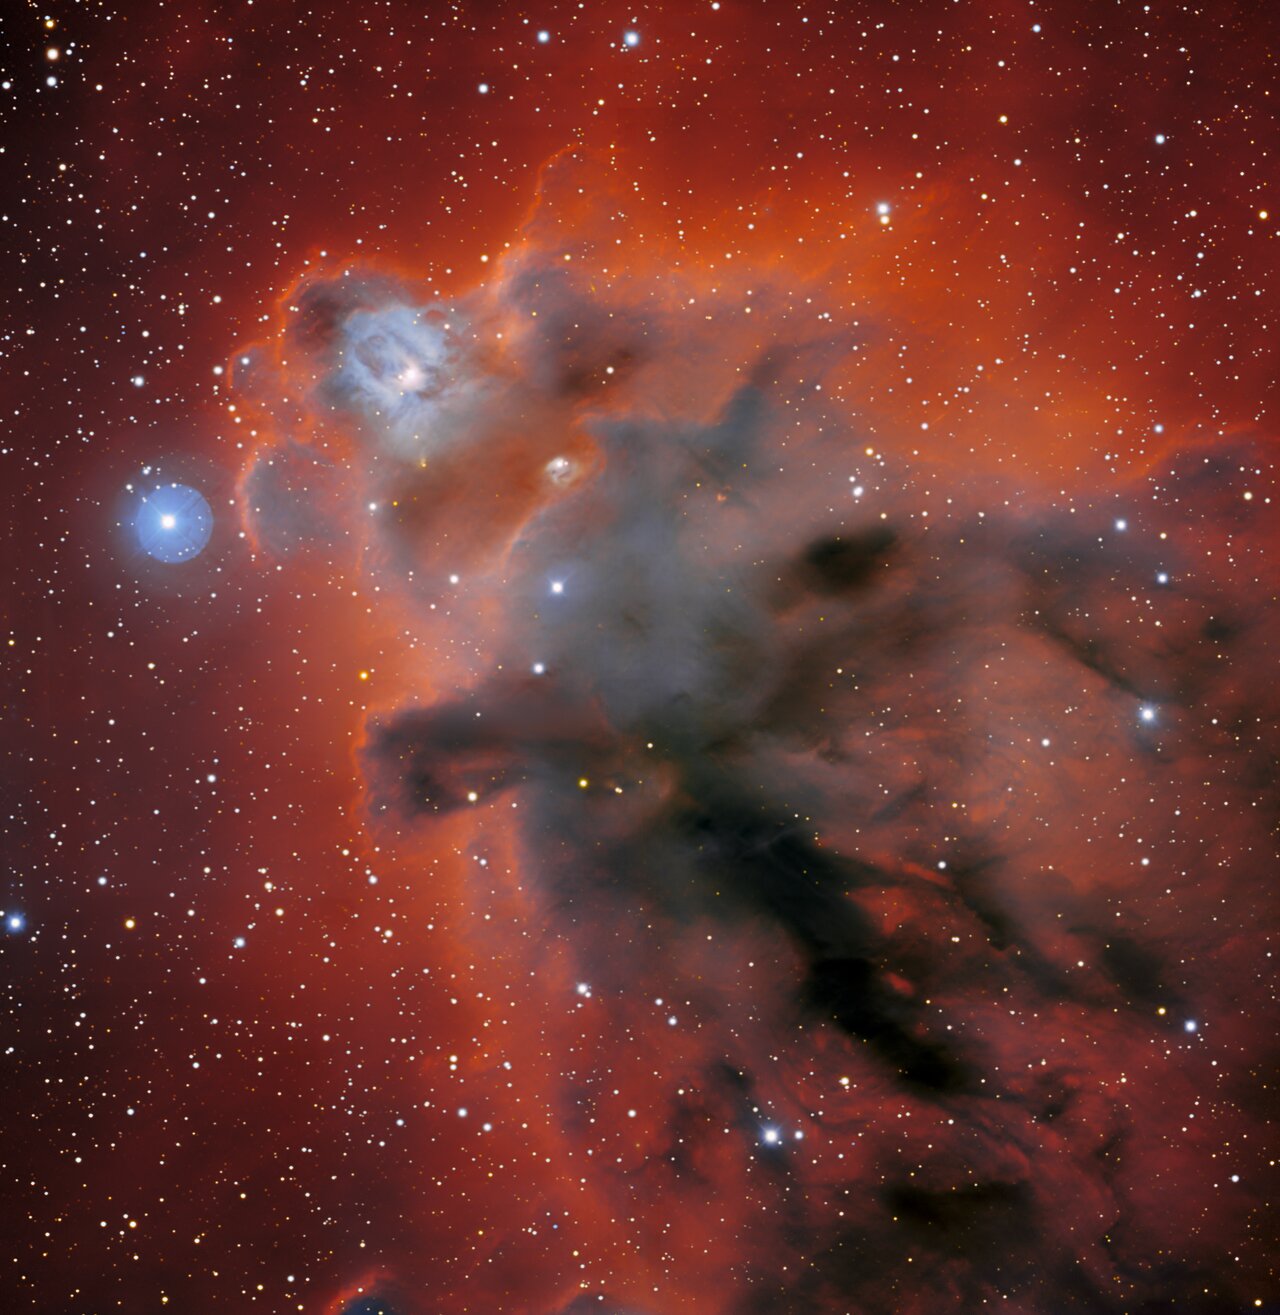 Астрономы показали фото темной туманности в созвездии Ориона за 1300 световых лет